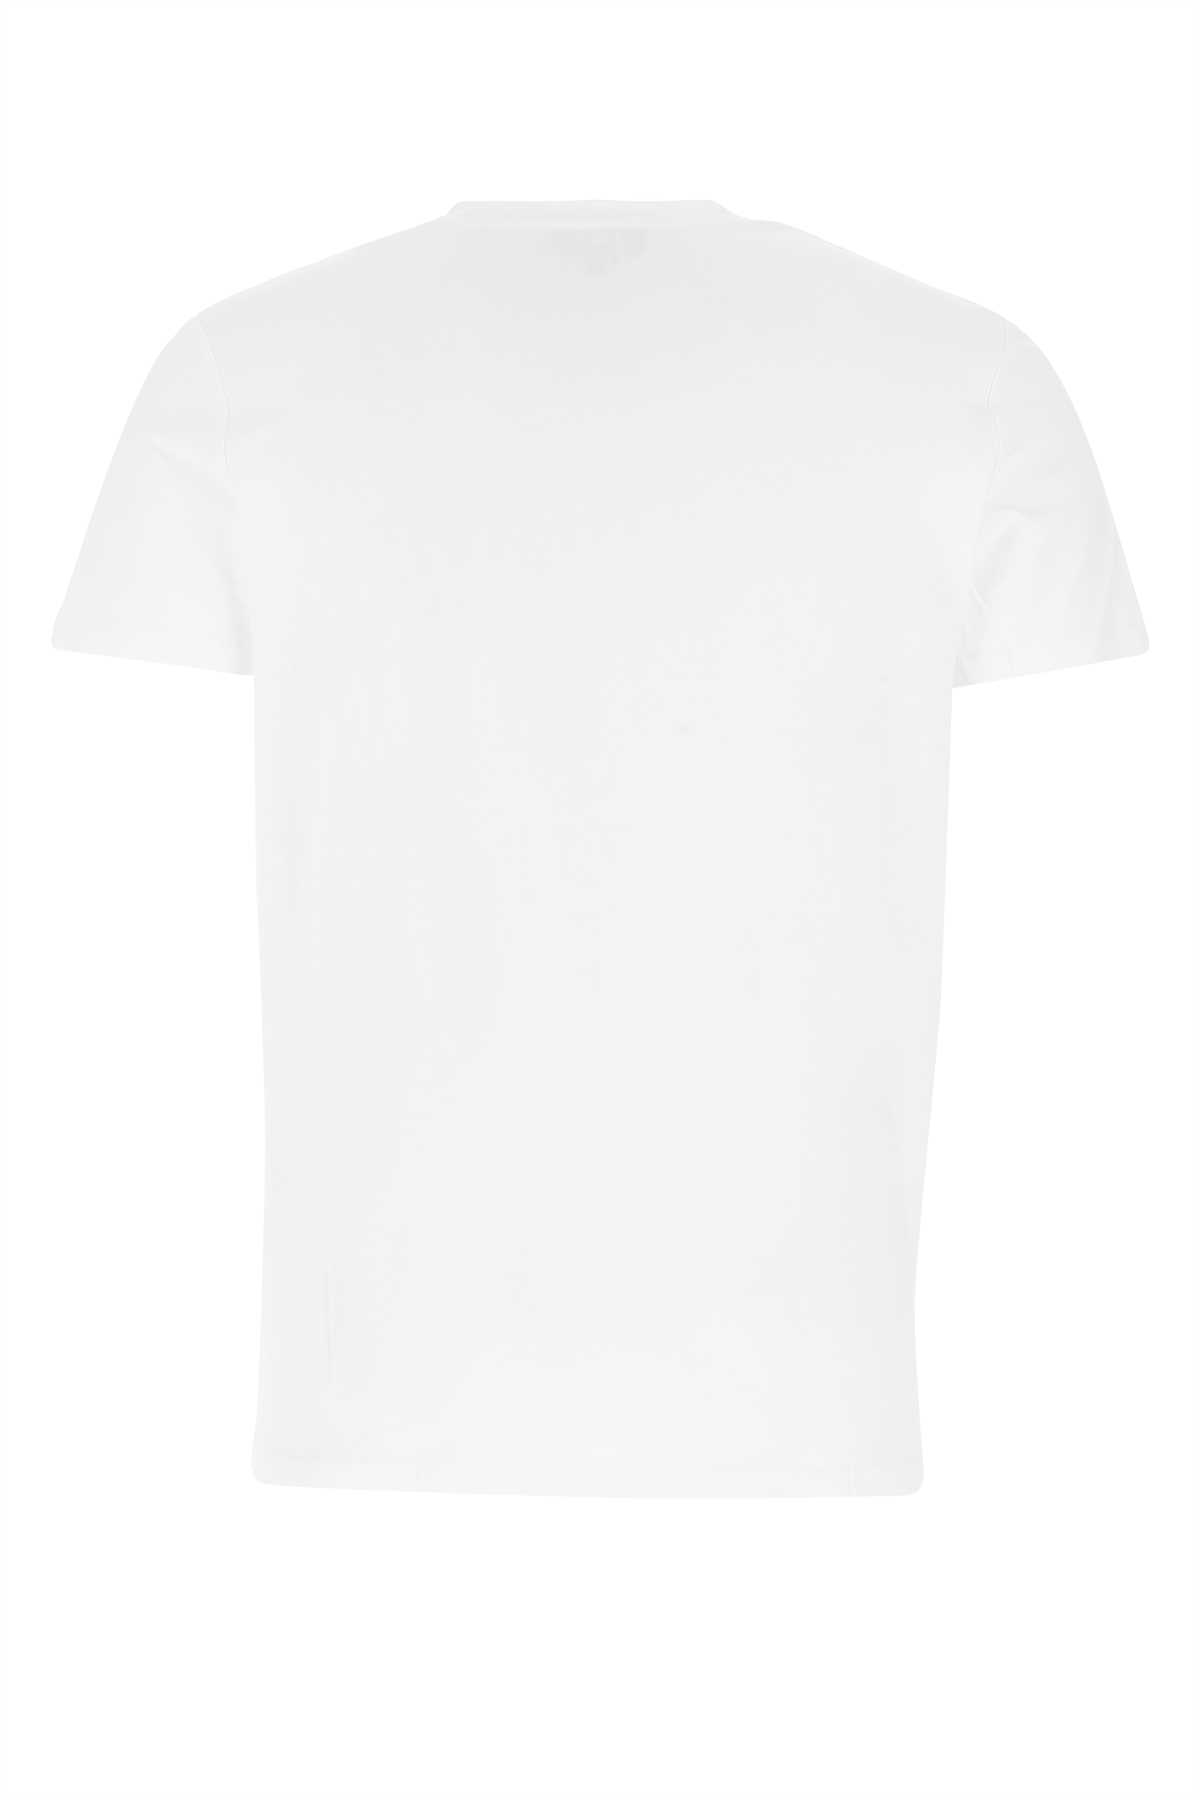 Apc White Cotton T-shirt In Iak